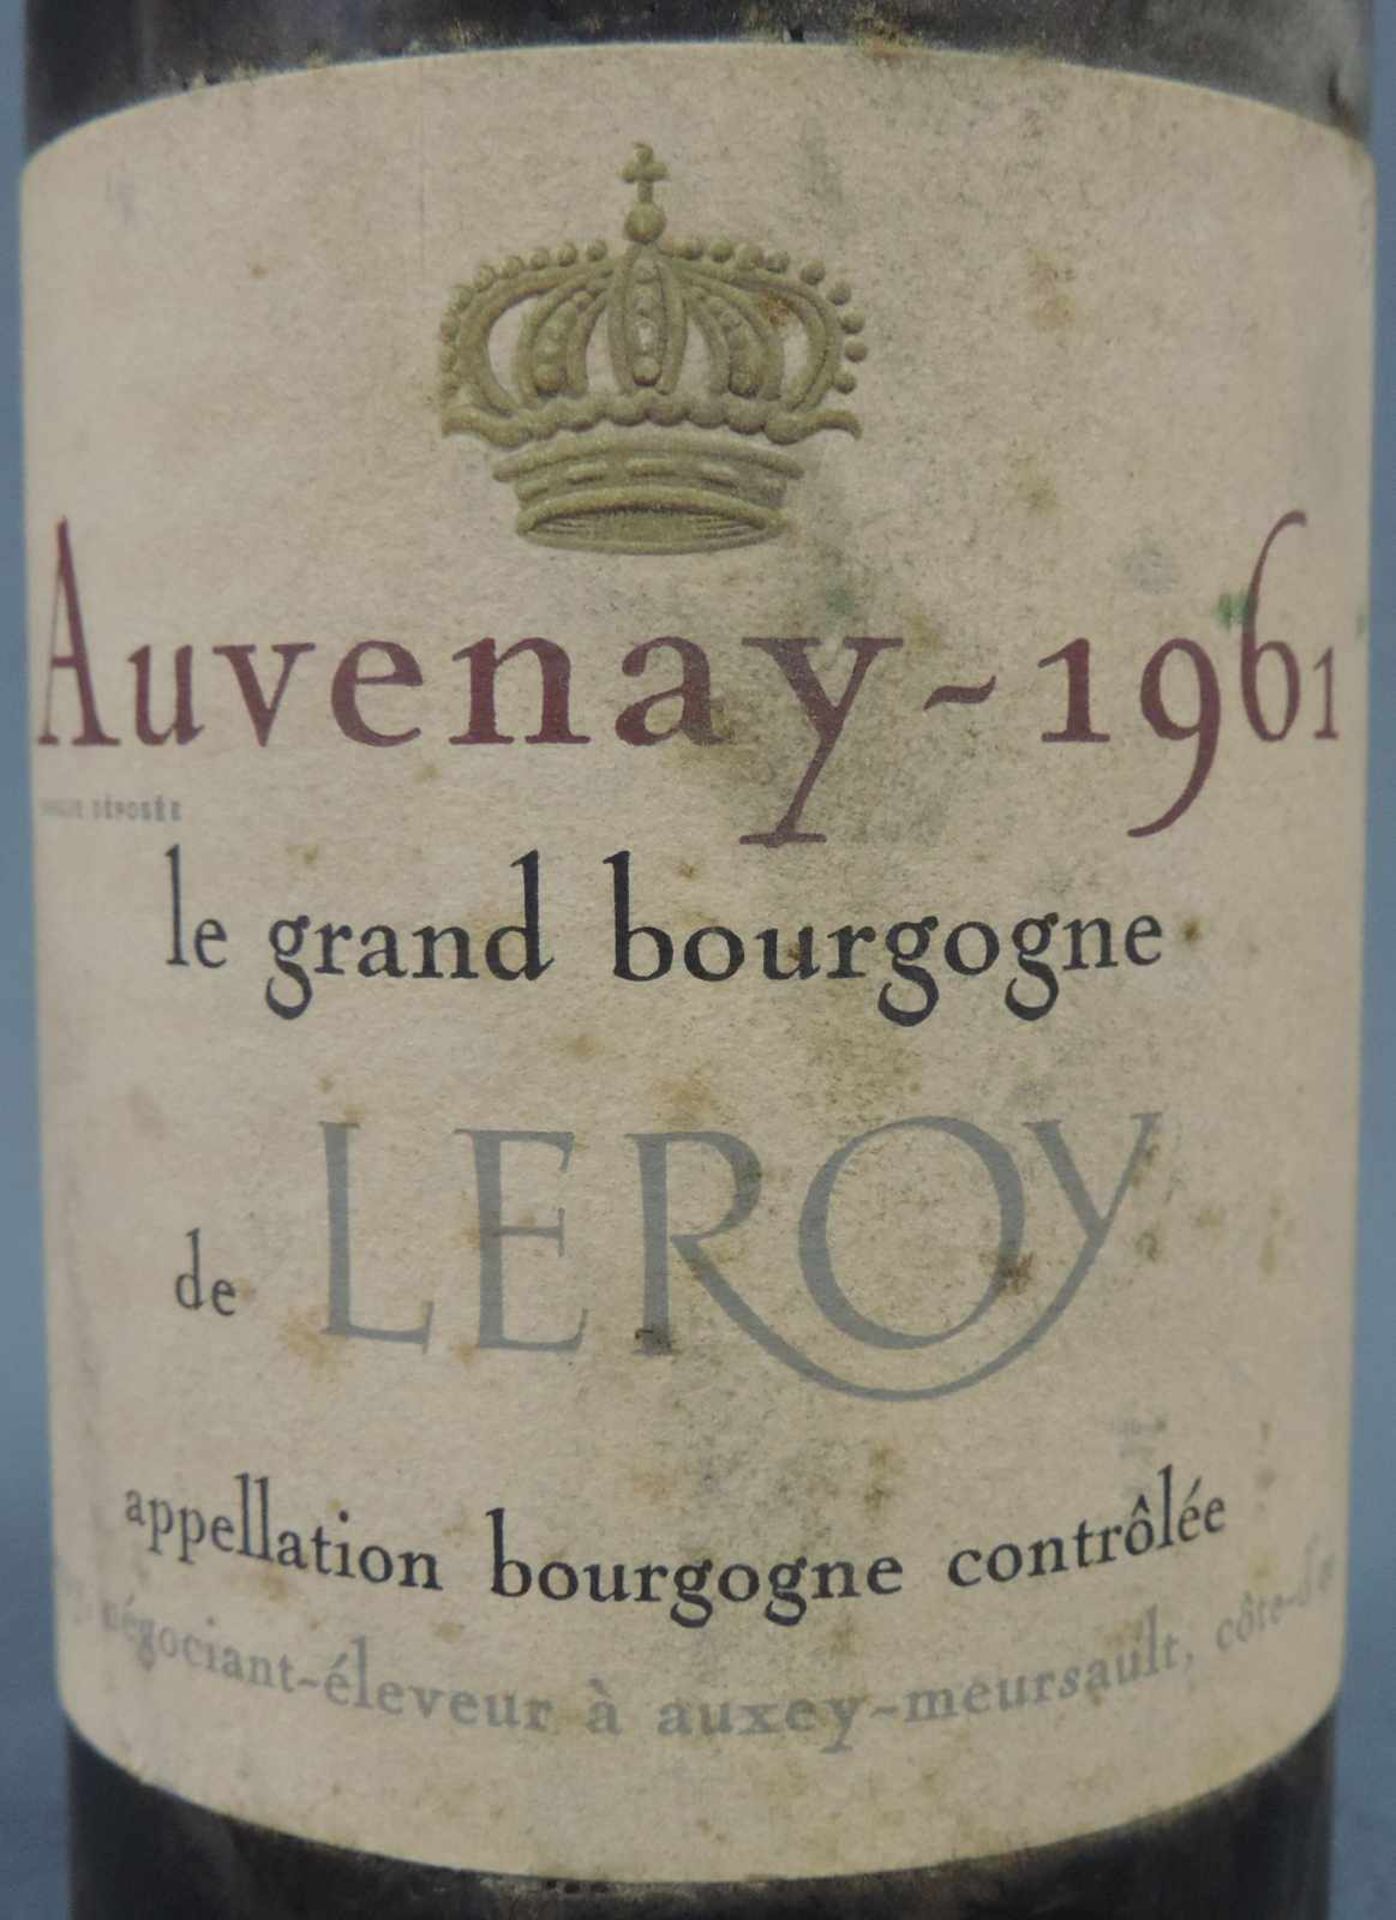 1961 Auvenay, Bourgogne AC, de LEROY. Eine ganze Flasche. Rotwein. Frankreich. Burgund. 1961 - Image 2 of 7